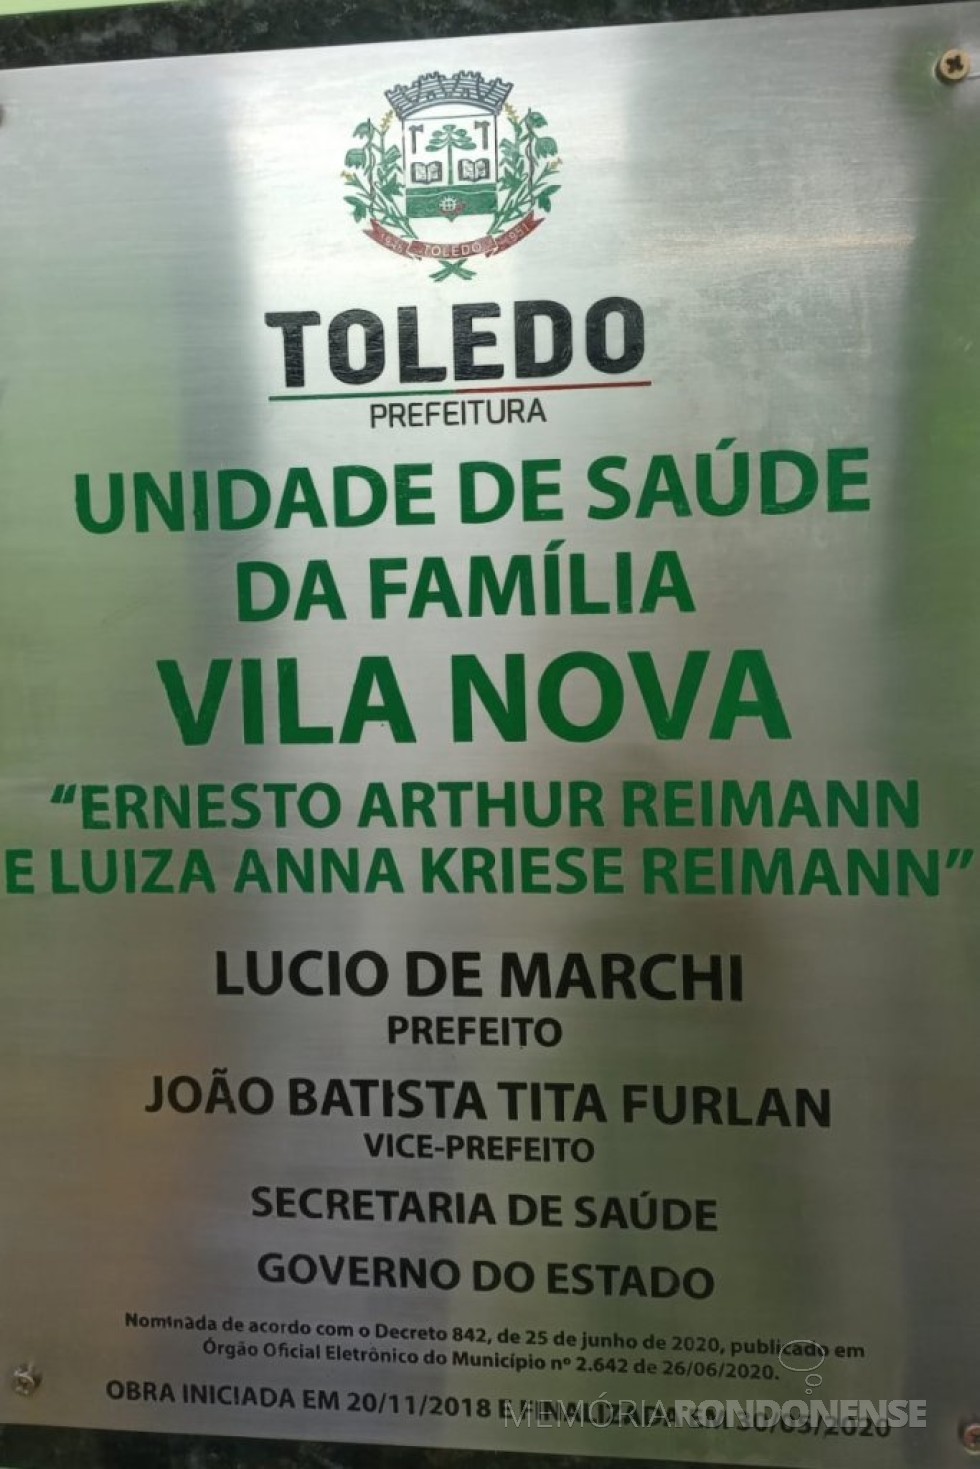 || Placa de designação da Unidade de Saúde da Família, localizada na sede distrital de Vila Nova (Toledo).
Imagem: Acervo Projeto Memória Rondonense - FOTO 5 - 